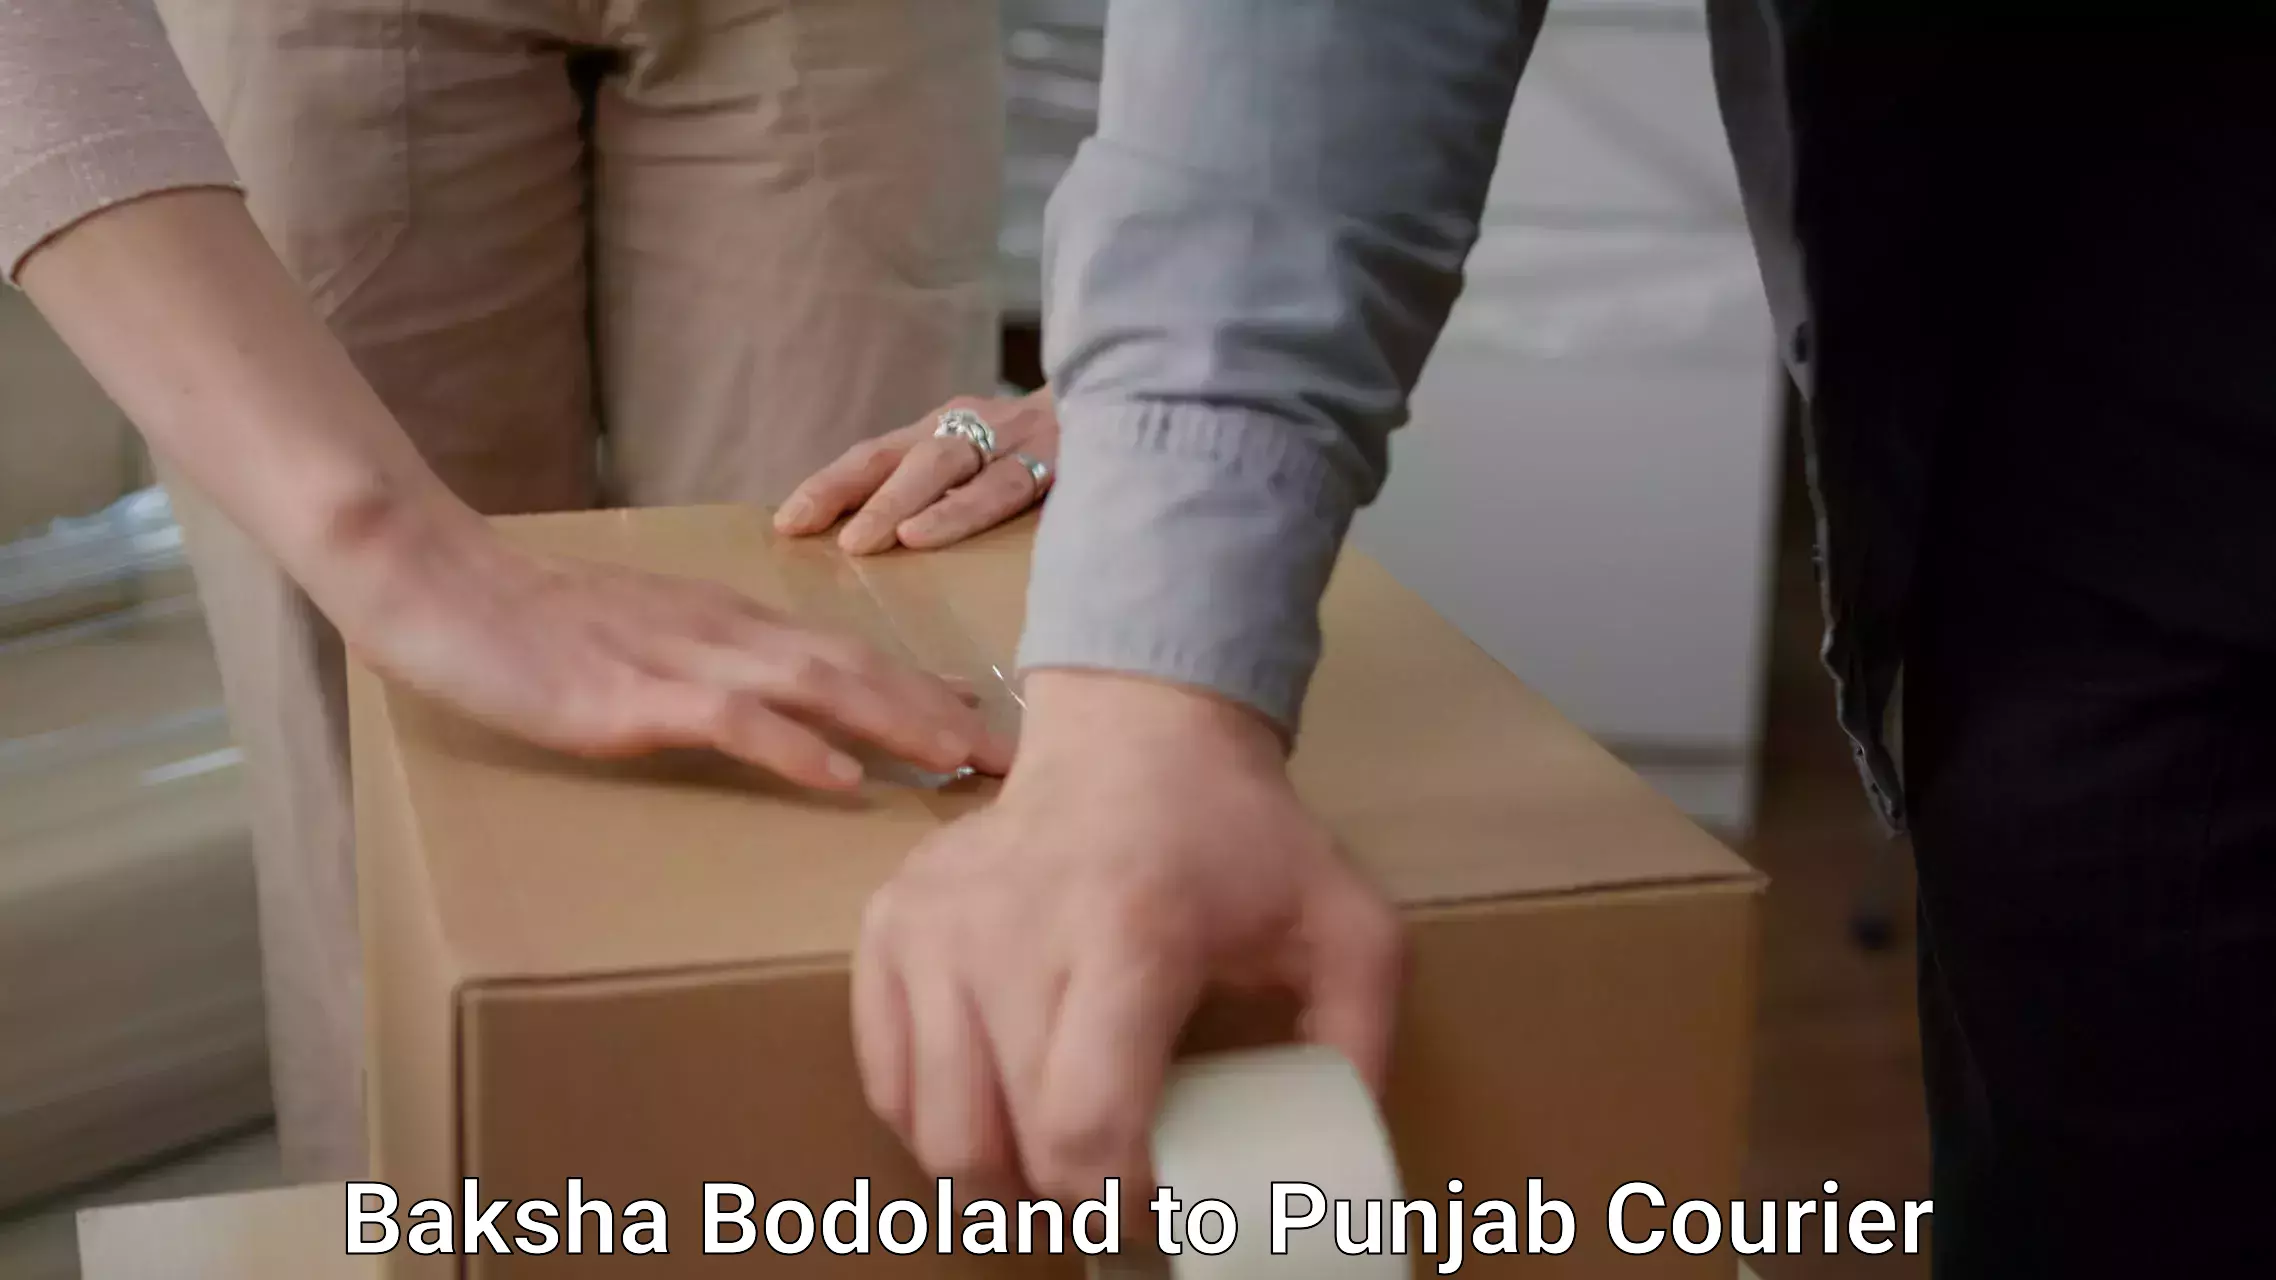 Furniture moving service Baksha Bodoland to Anandpur Sahib